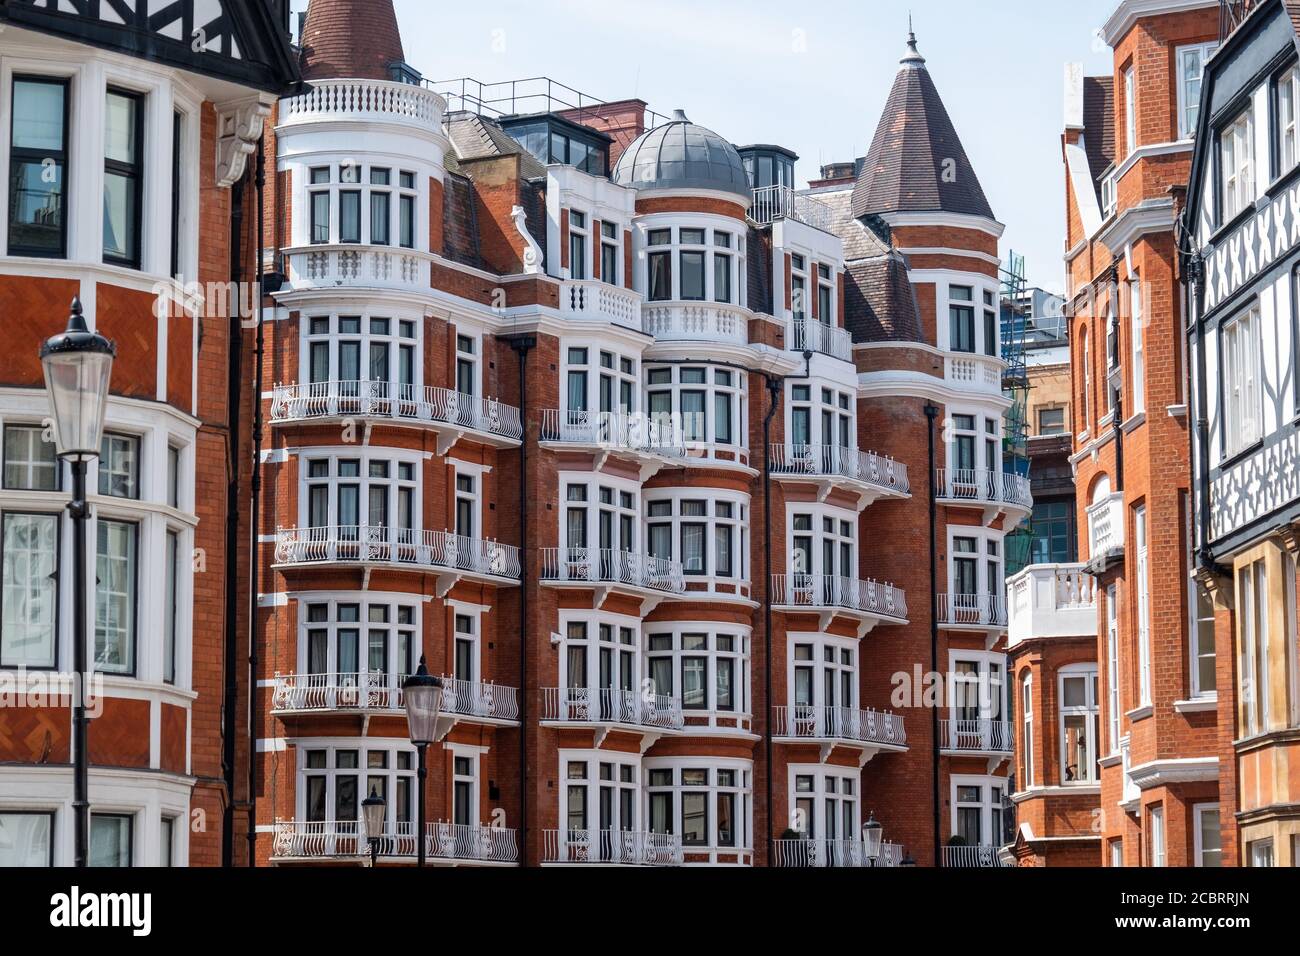 Magnifique détail architectural de Knightsbridge, Londres Banque D'Images